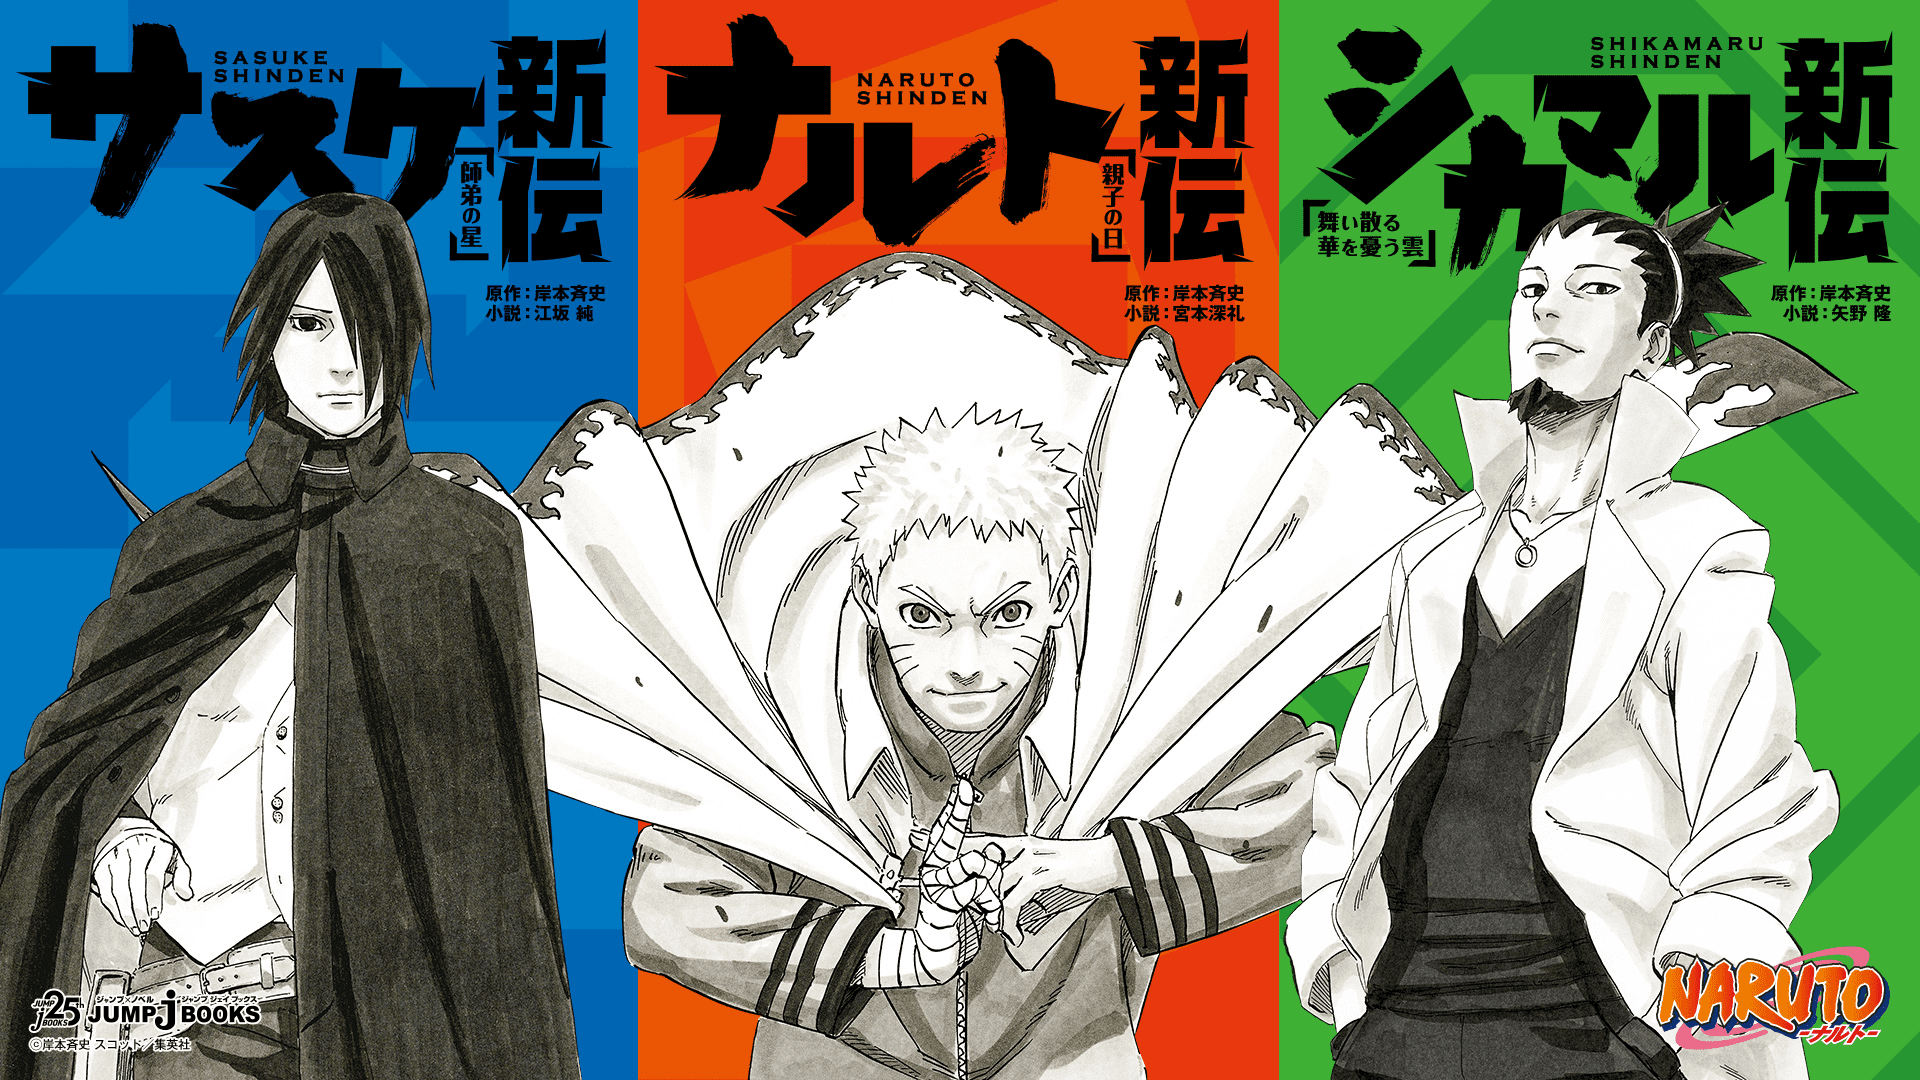 Naruto Shinden Novel